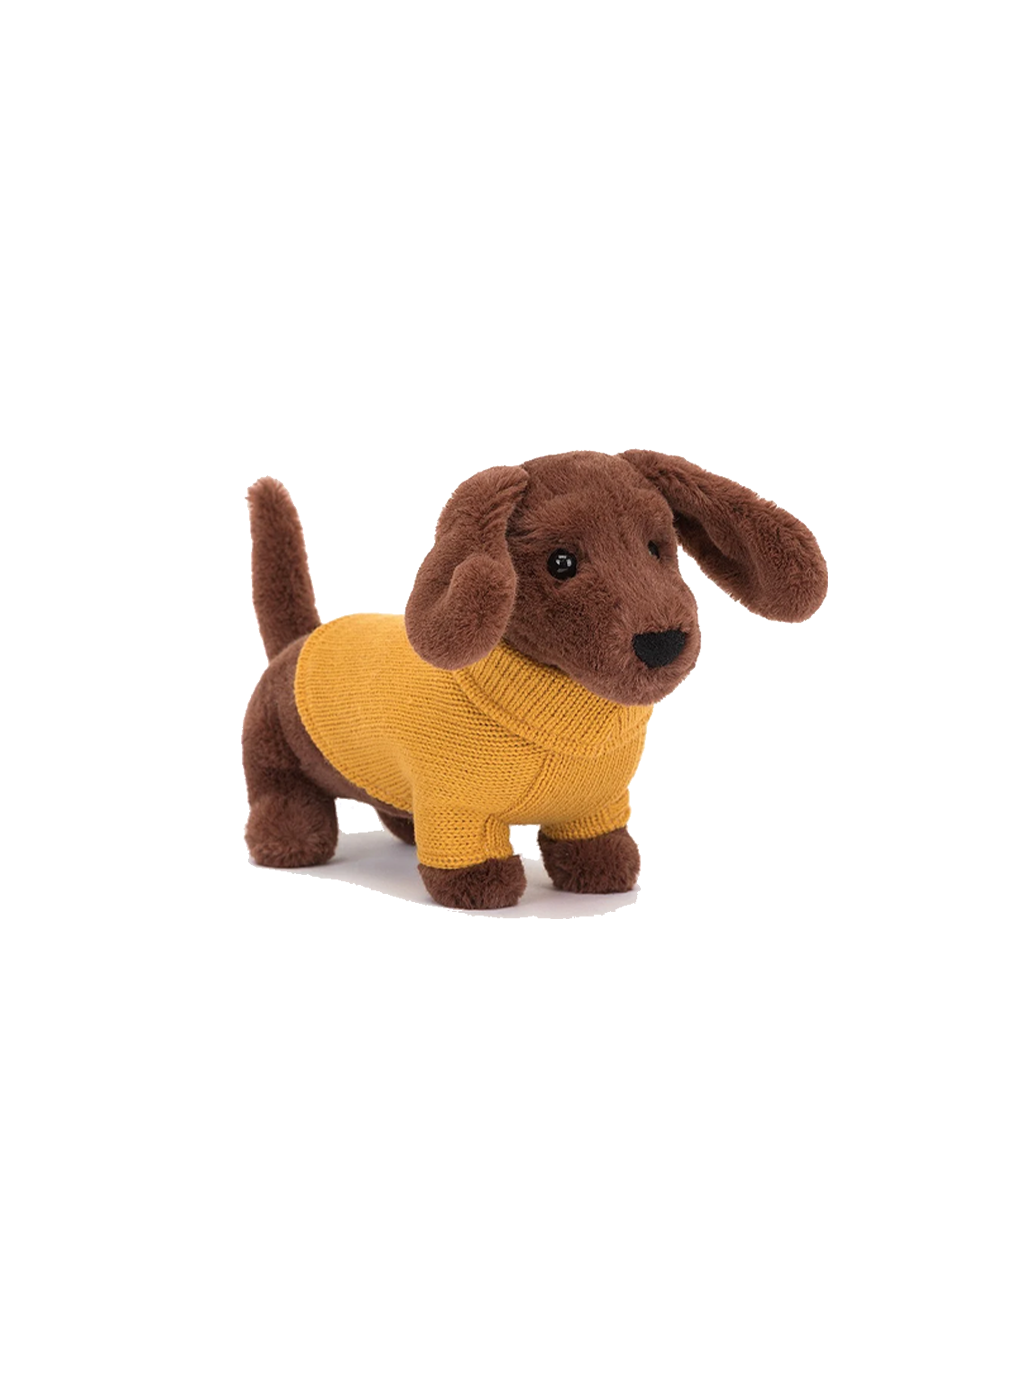 Perro salchicha tierno con suéter